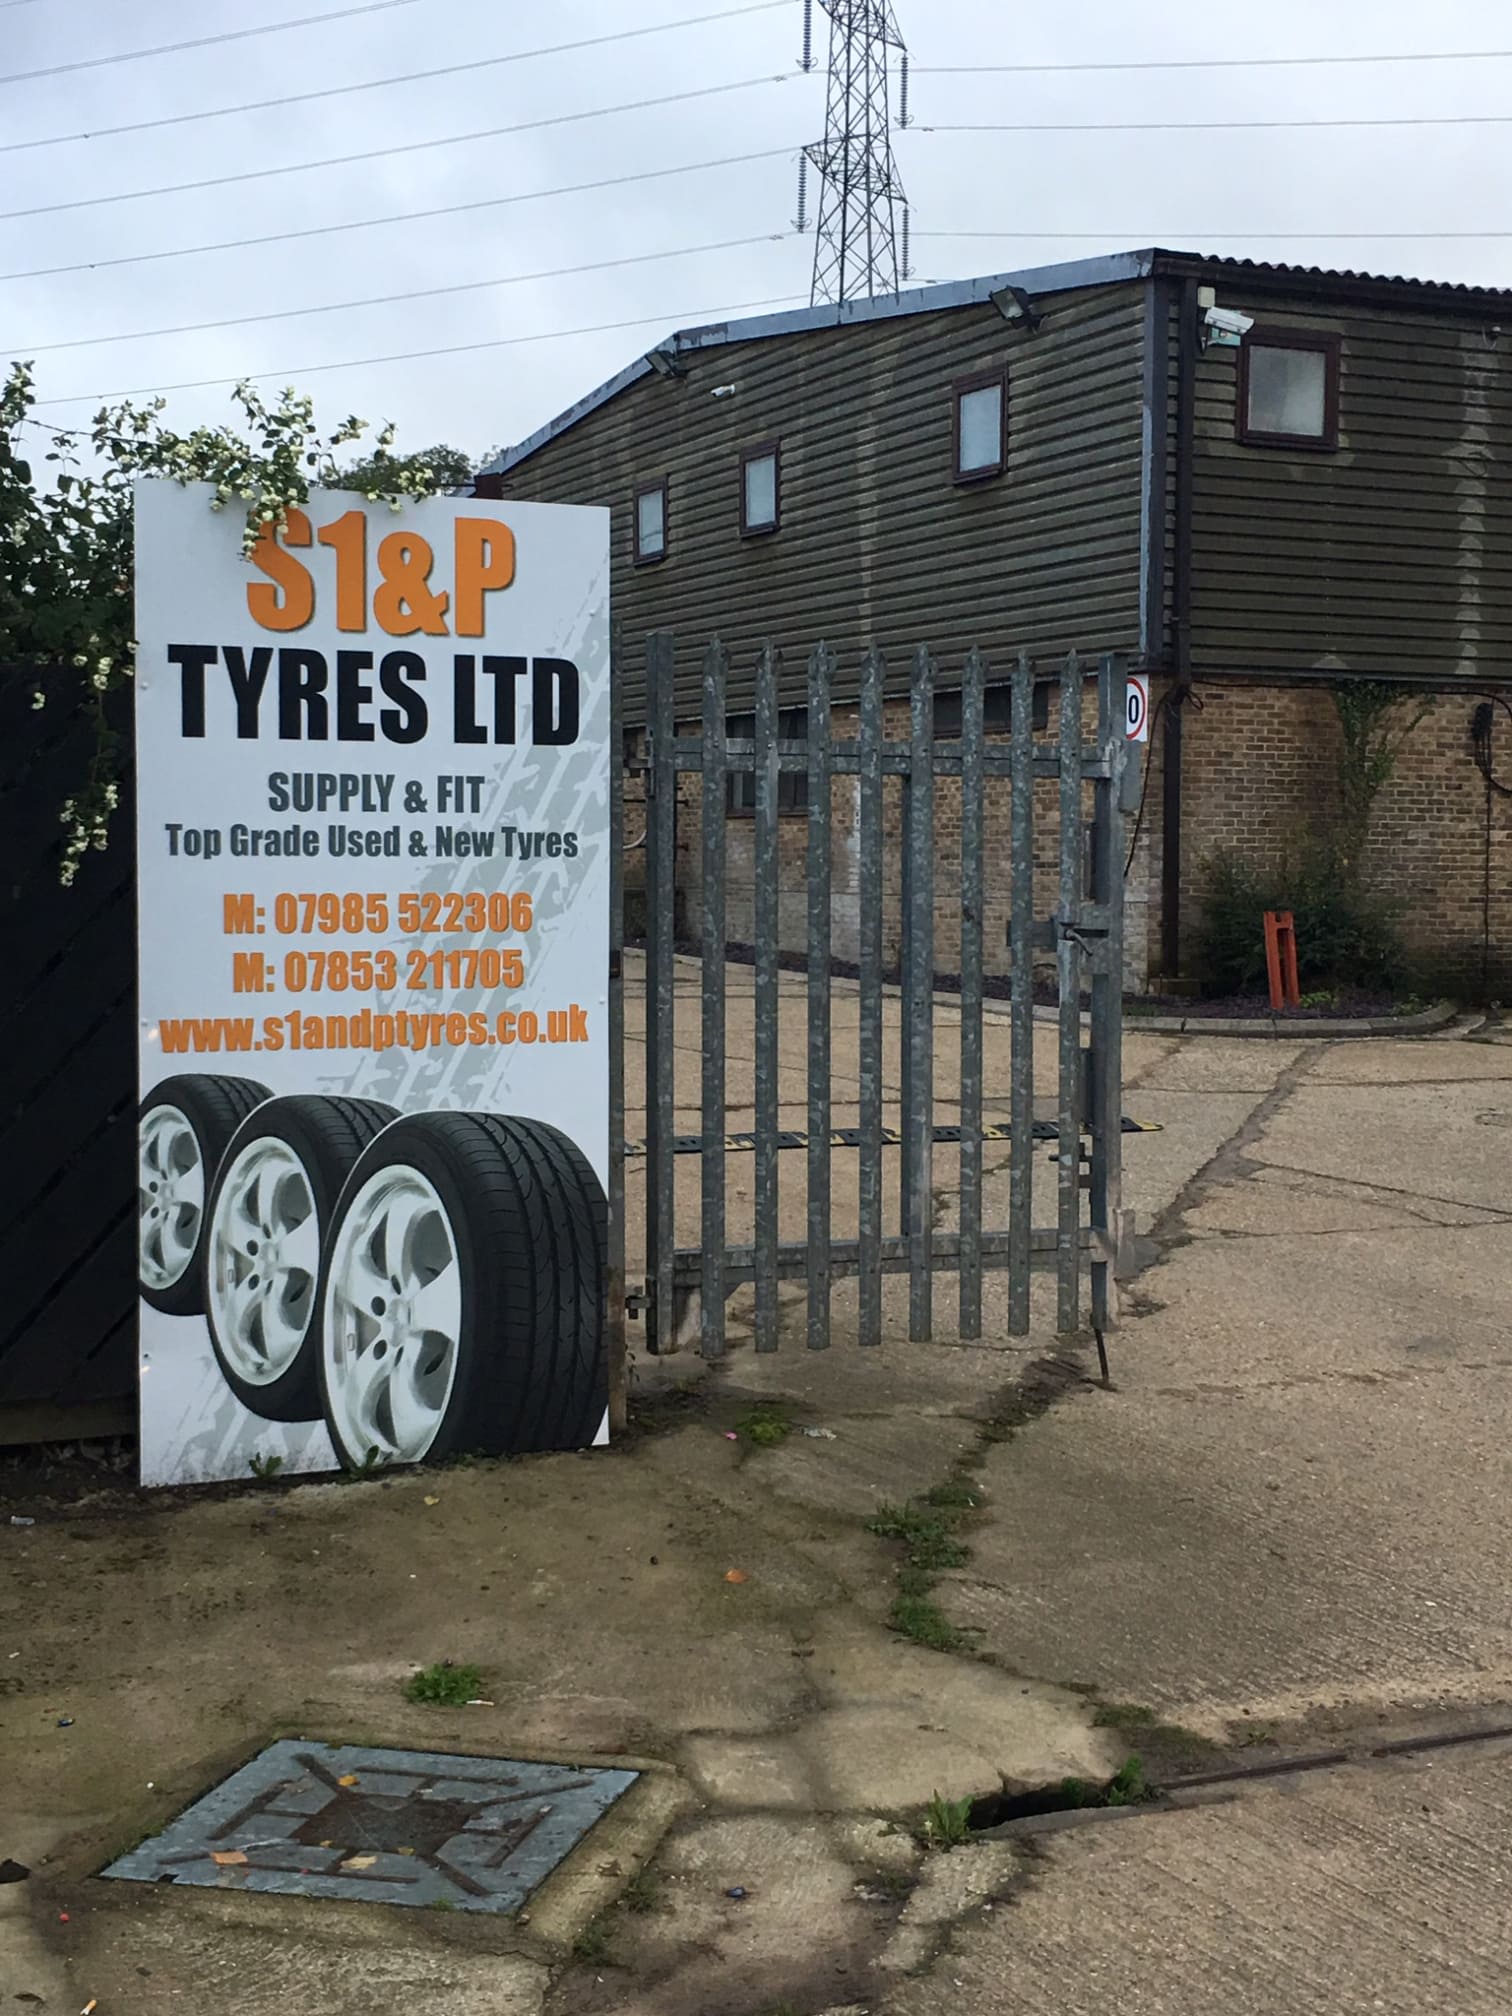 Images S1 & P Tyres Ltd